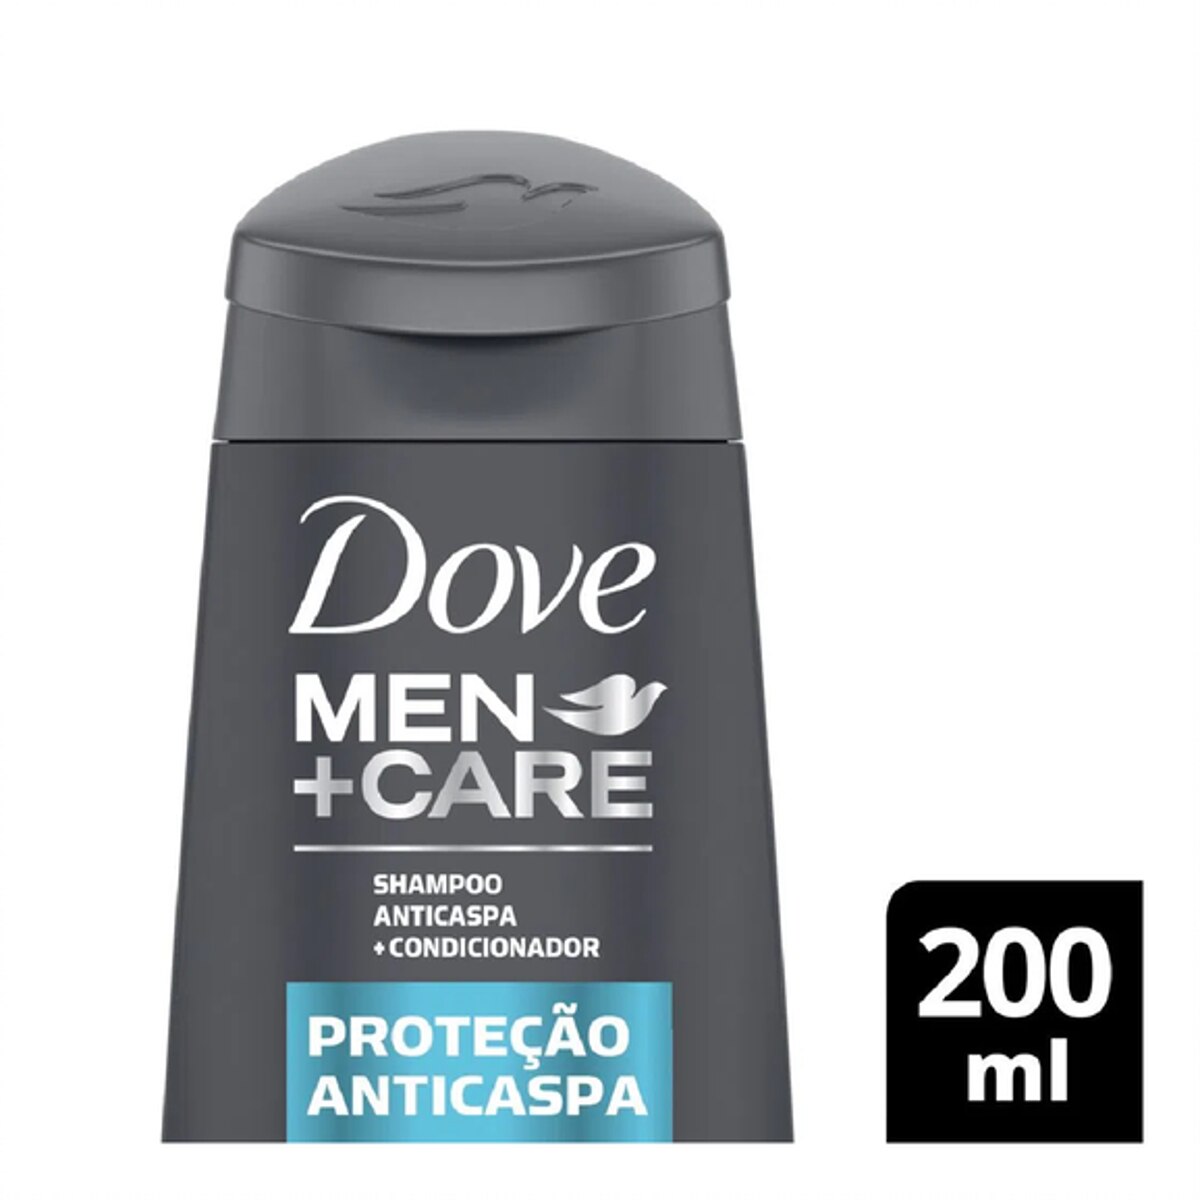 Shampoo + Condicionador Dove Men +Care Protecao Anticaspa 2 em 1 200ml